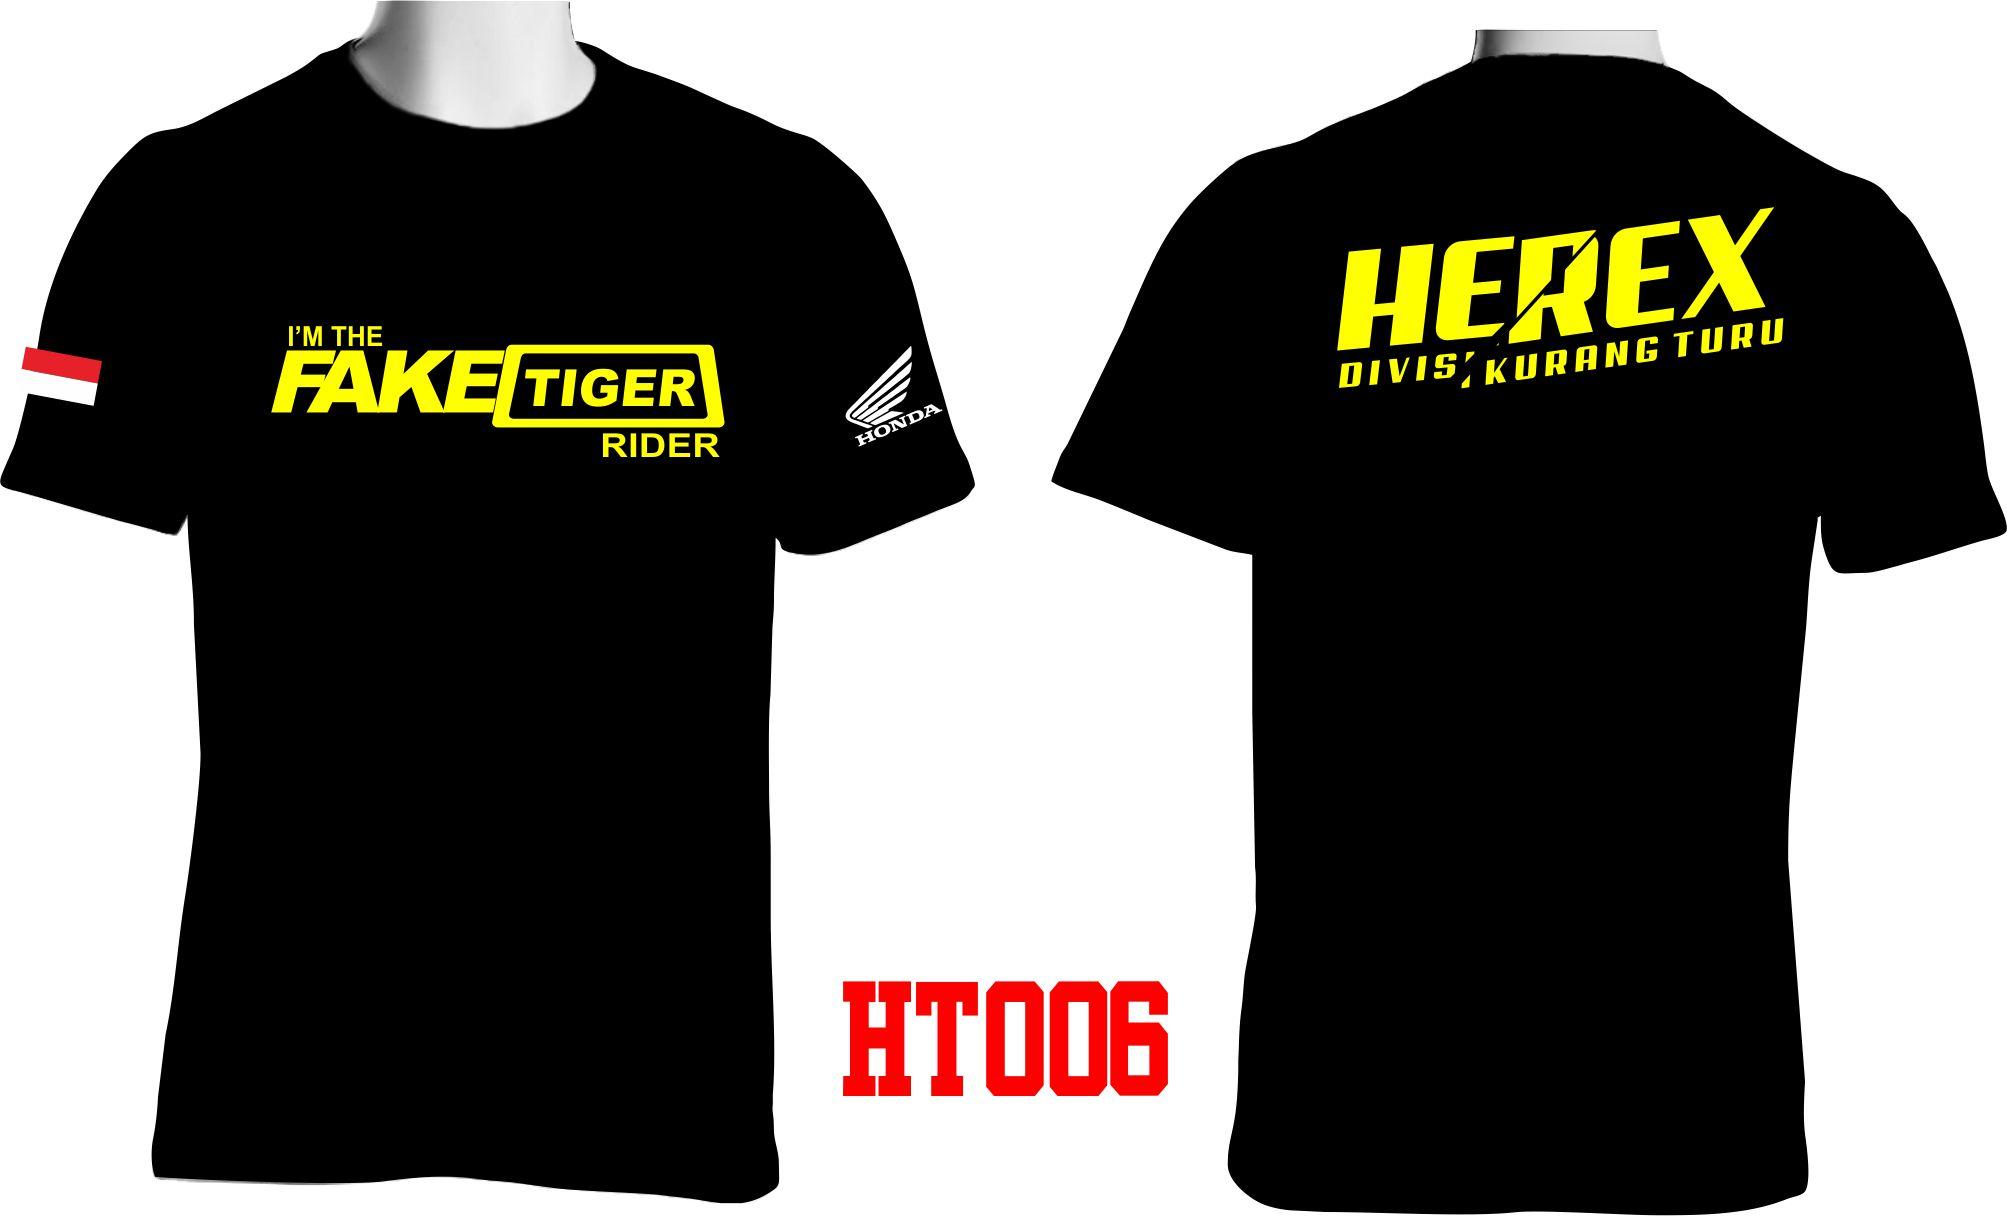  Baju  Herex  Tiger  Harga Spesifikasi Kaos Racing Anak 